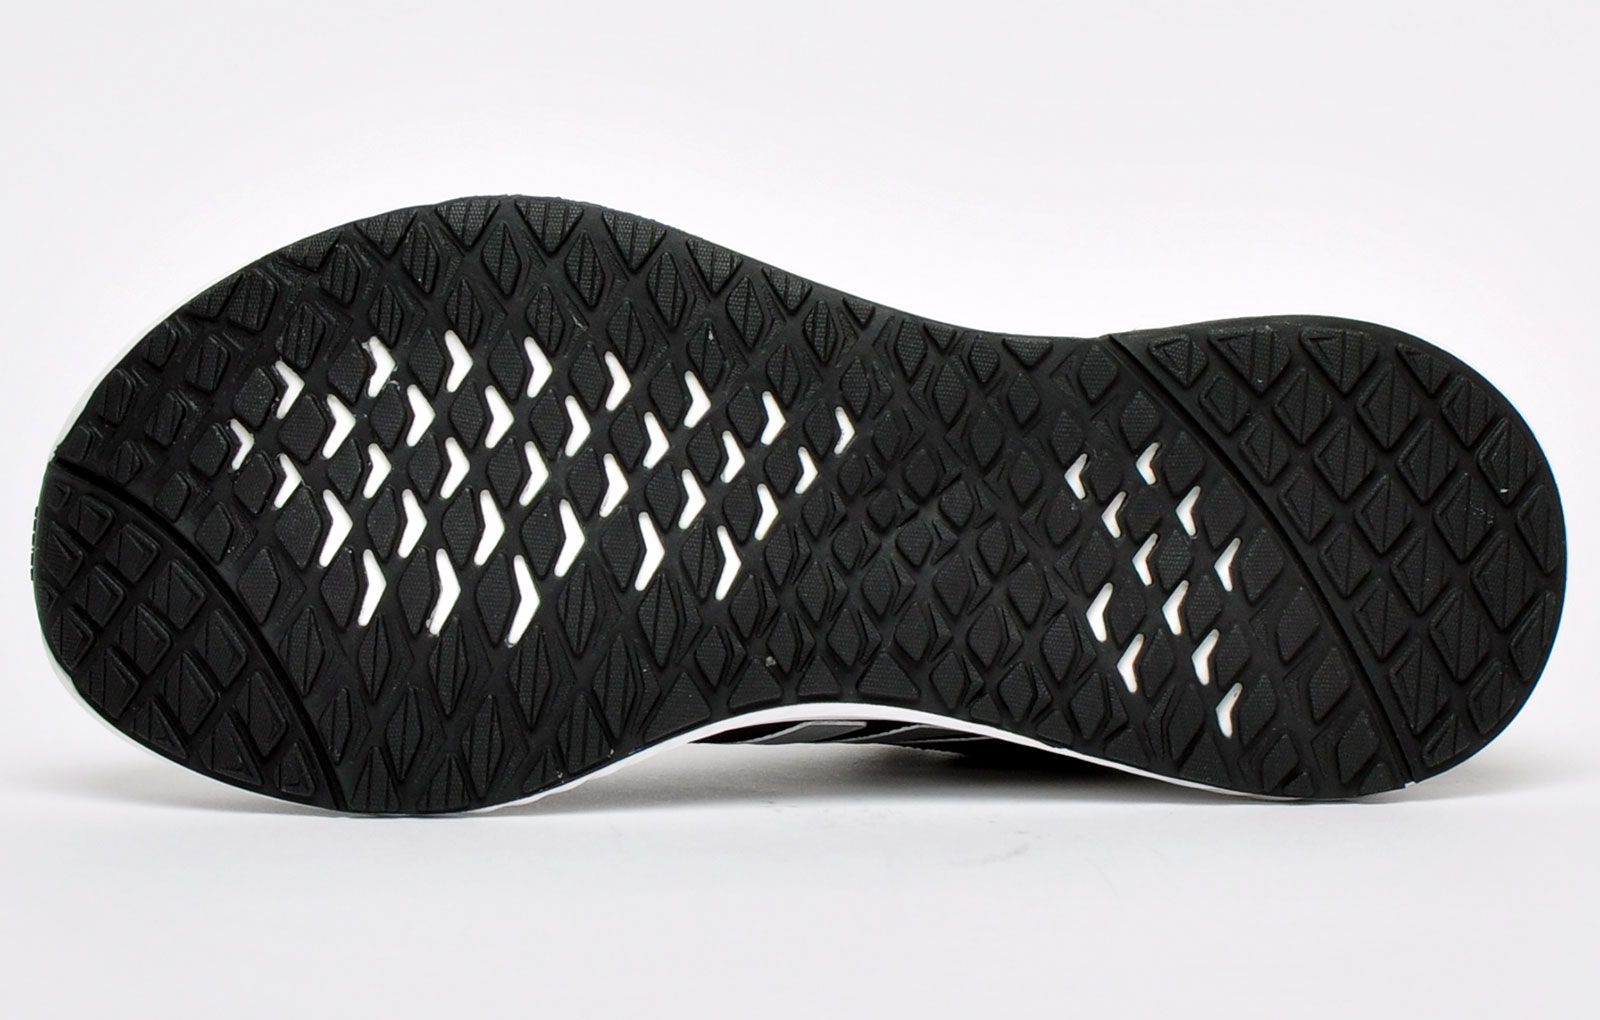 Deze Adidas Edge Lux hardloopschoenen voor dames stimuleren een natuurlijke bewegingsvrijheid met een sokachtige constructie met overlays van textielgaas voor een comfortabele, persoonlijke, nauwsluitende pasvorm.